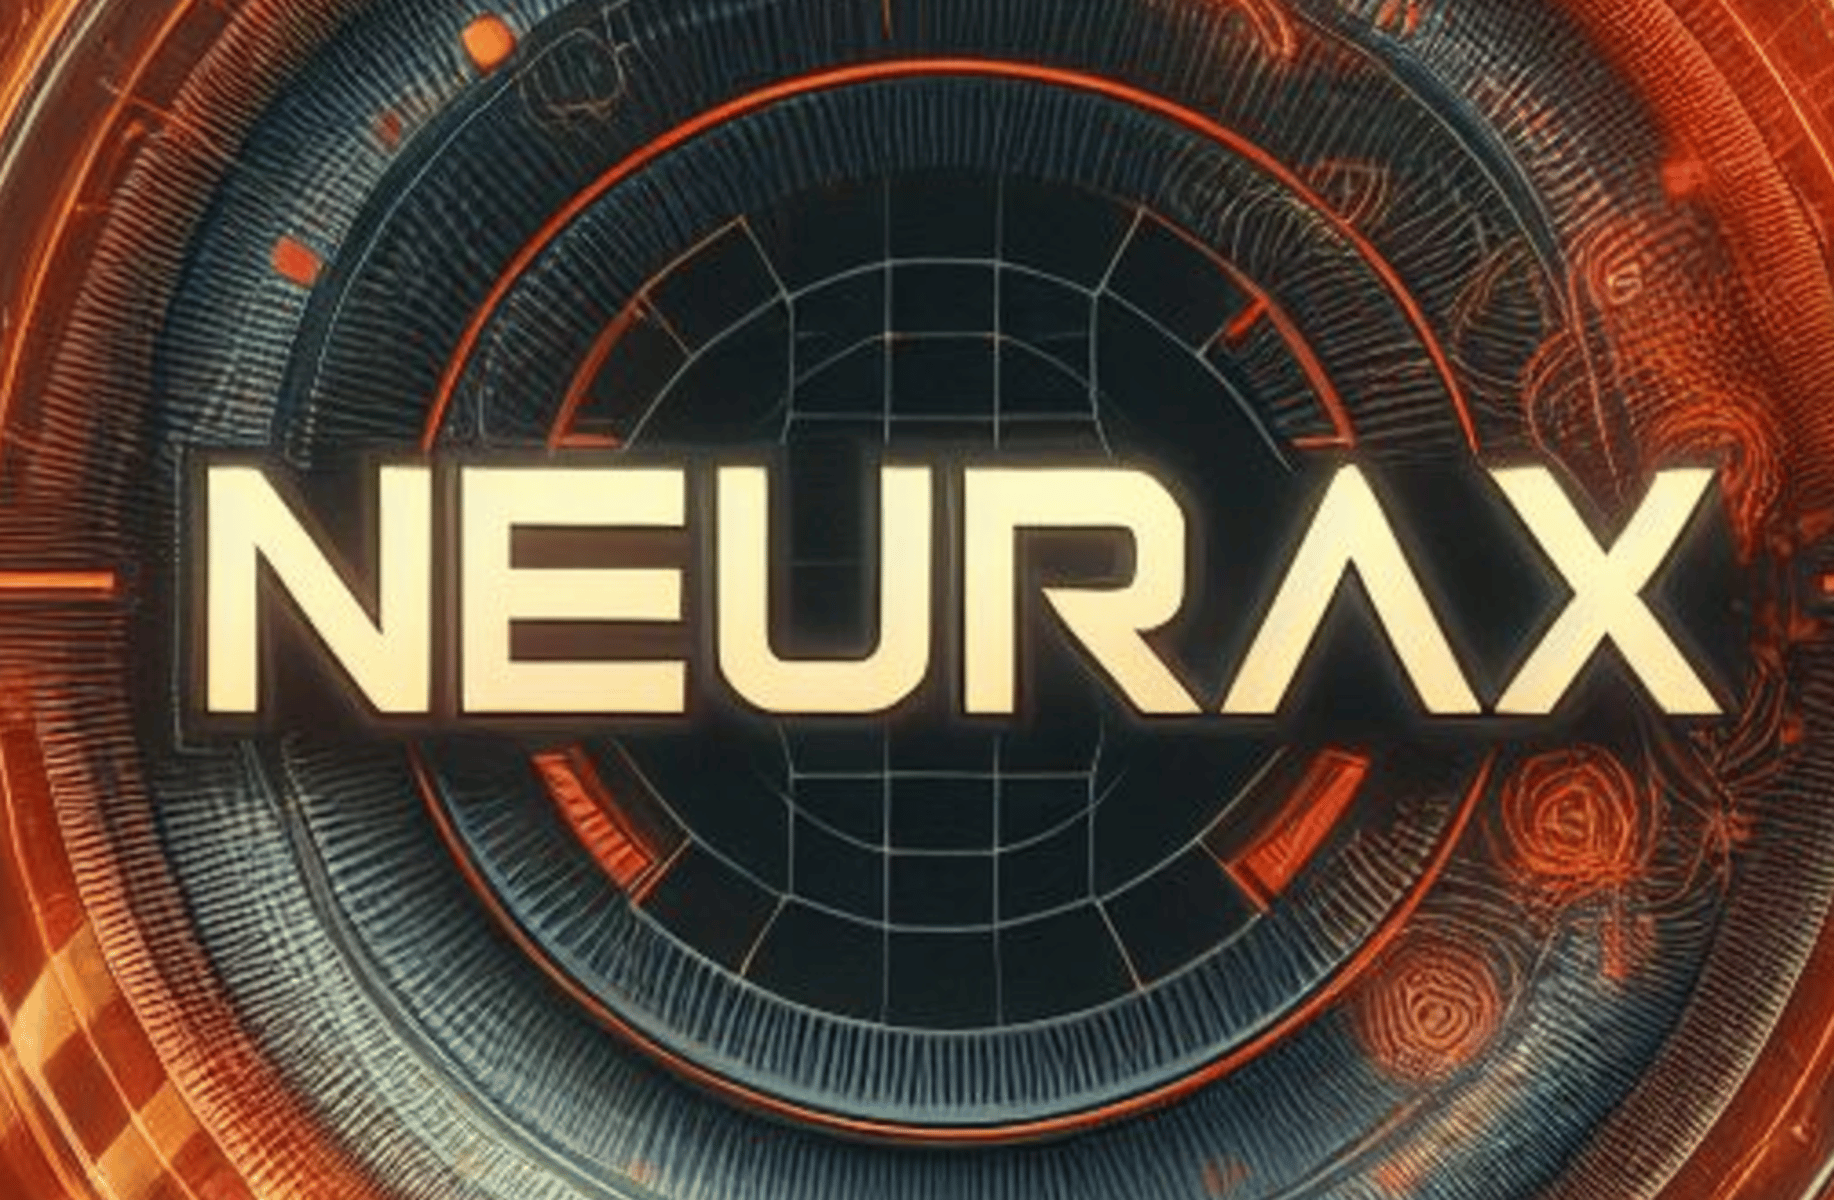 Neurax